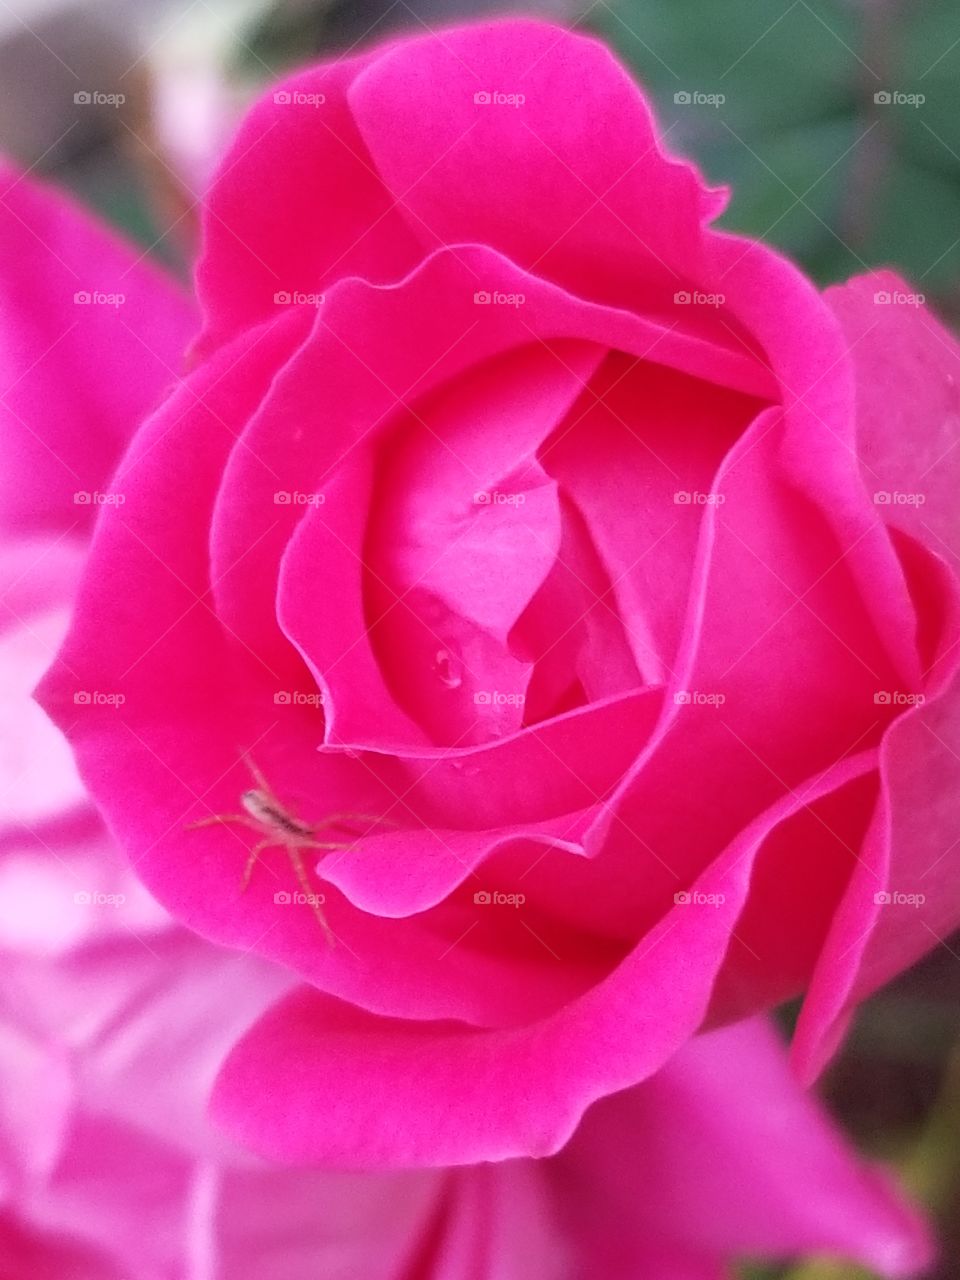 Spider on a rose bloom.